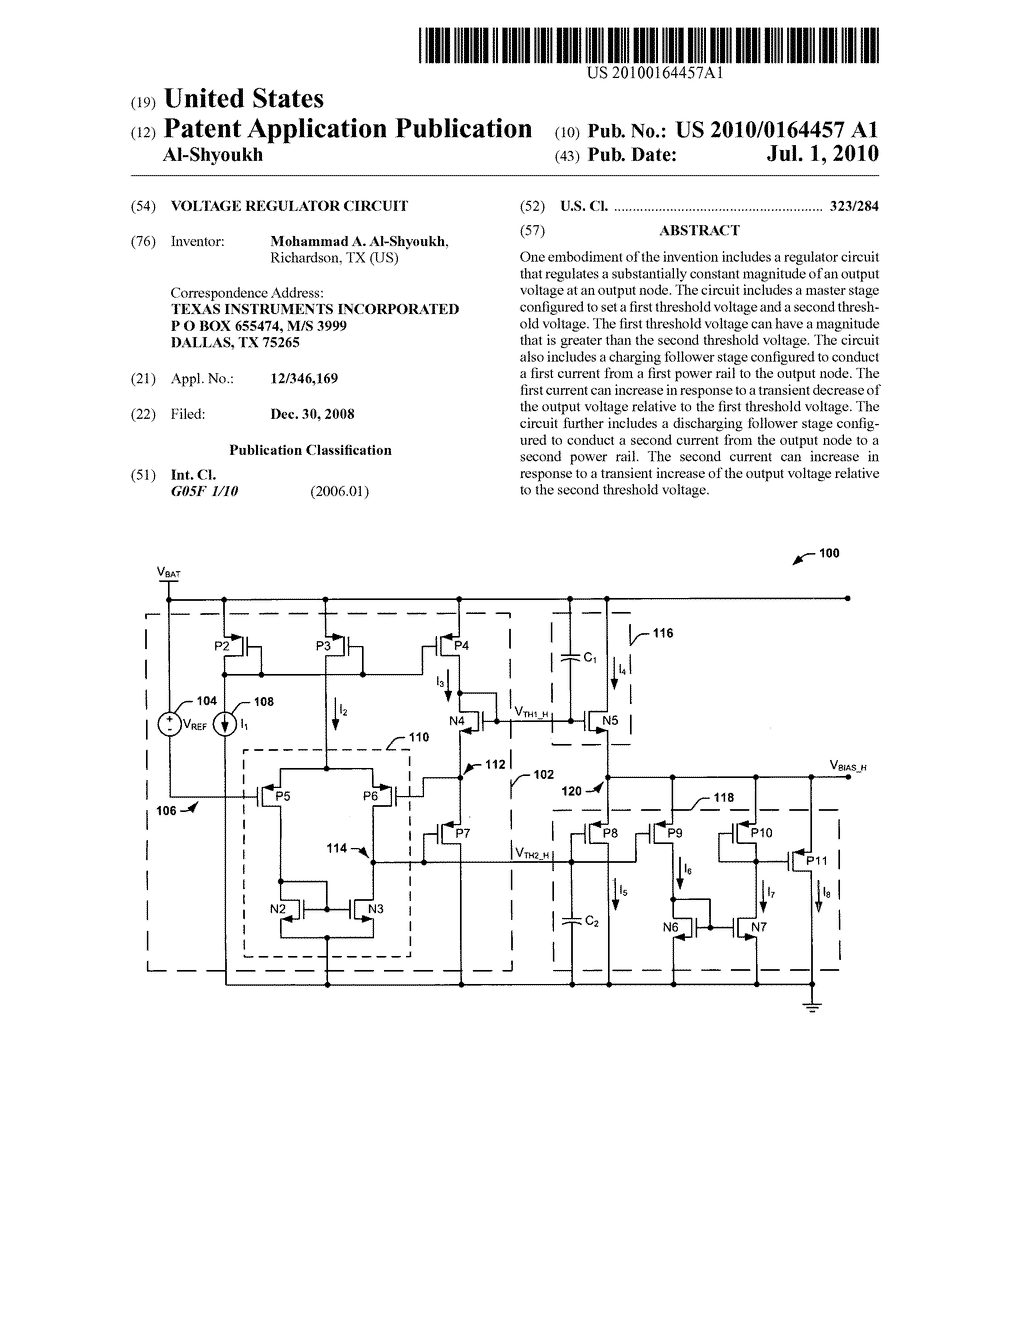 Voltage Regulator Circuit - diagram, schematic, and image 01